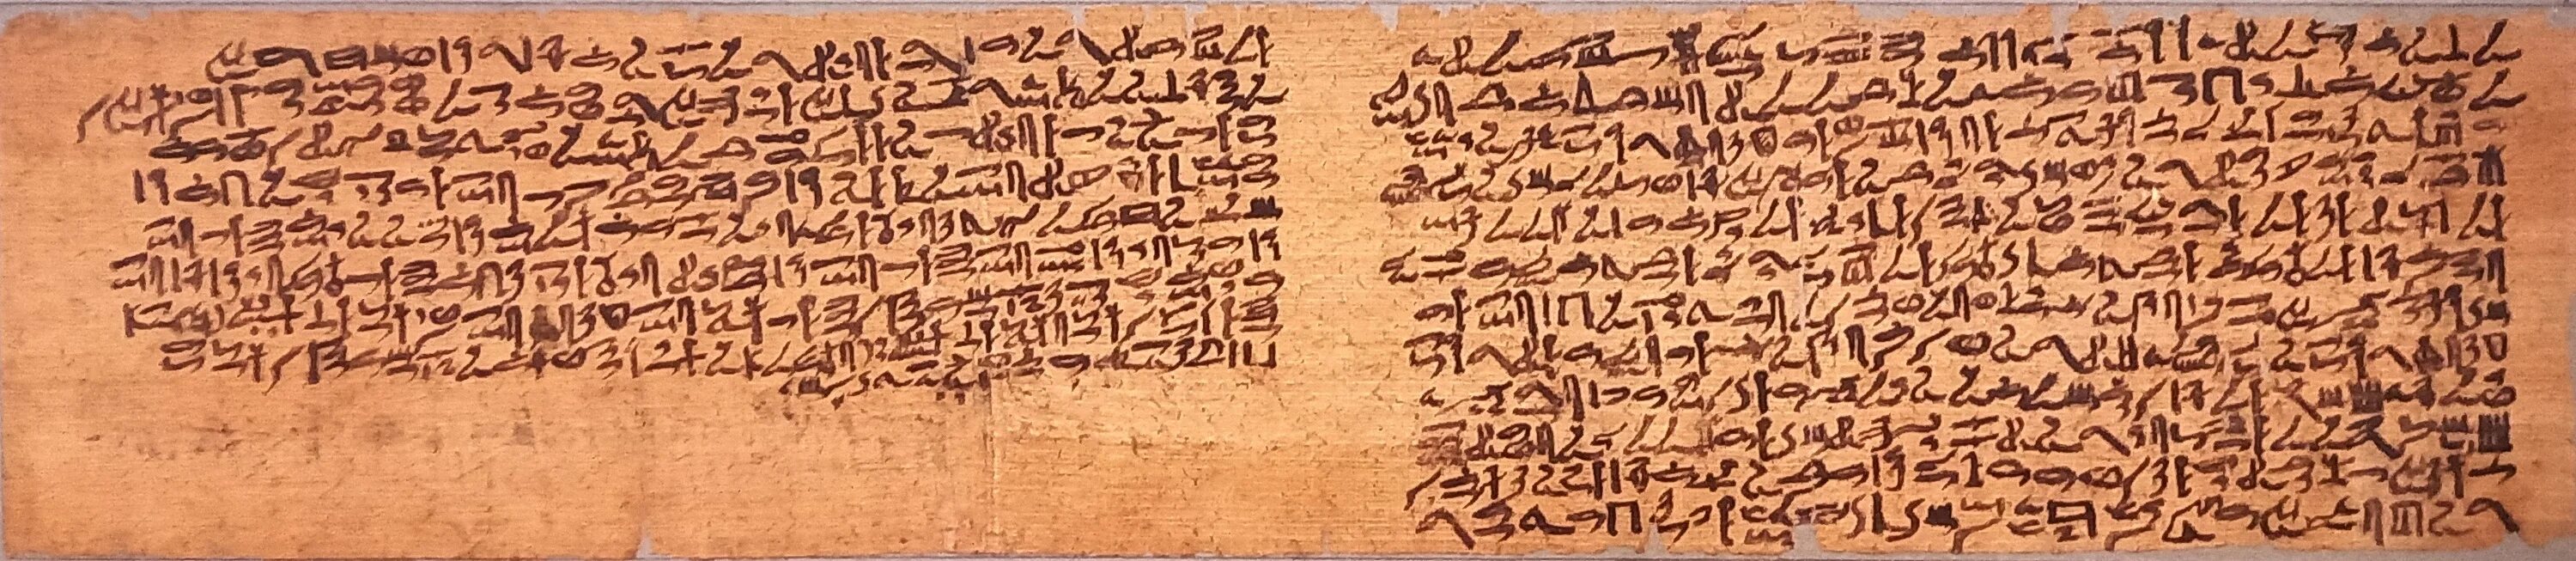 Папирус Присса самая древняя книга. Папирус Присса 3350 год до н э. Папирус Присса самая древняя. Письмена на папирусе. Древние тексты 8